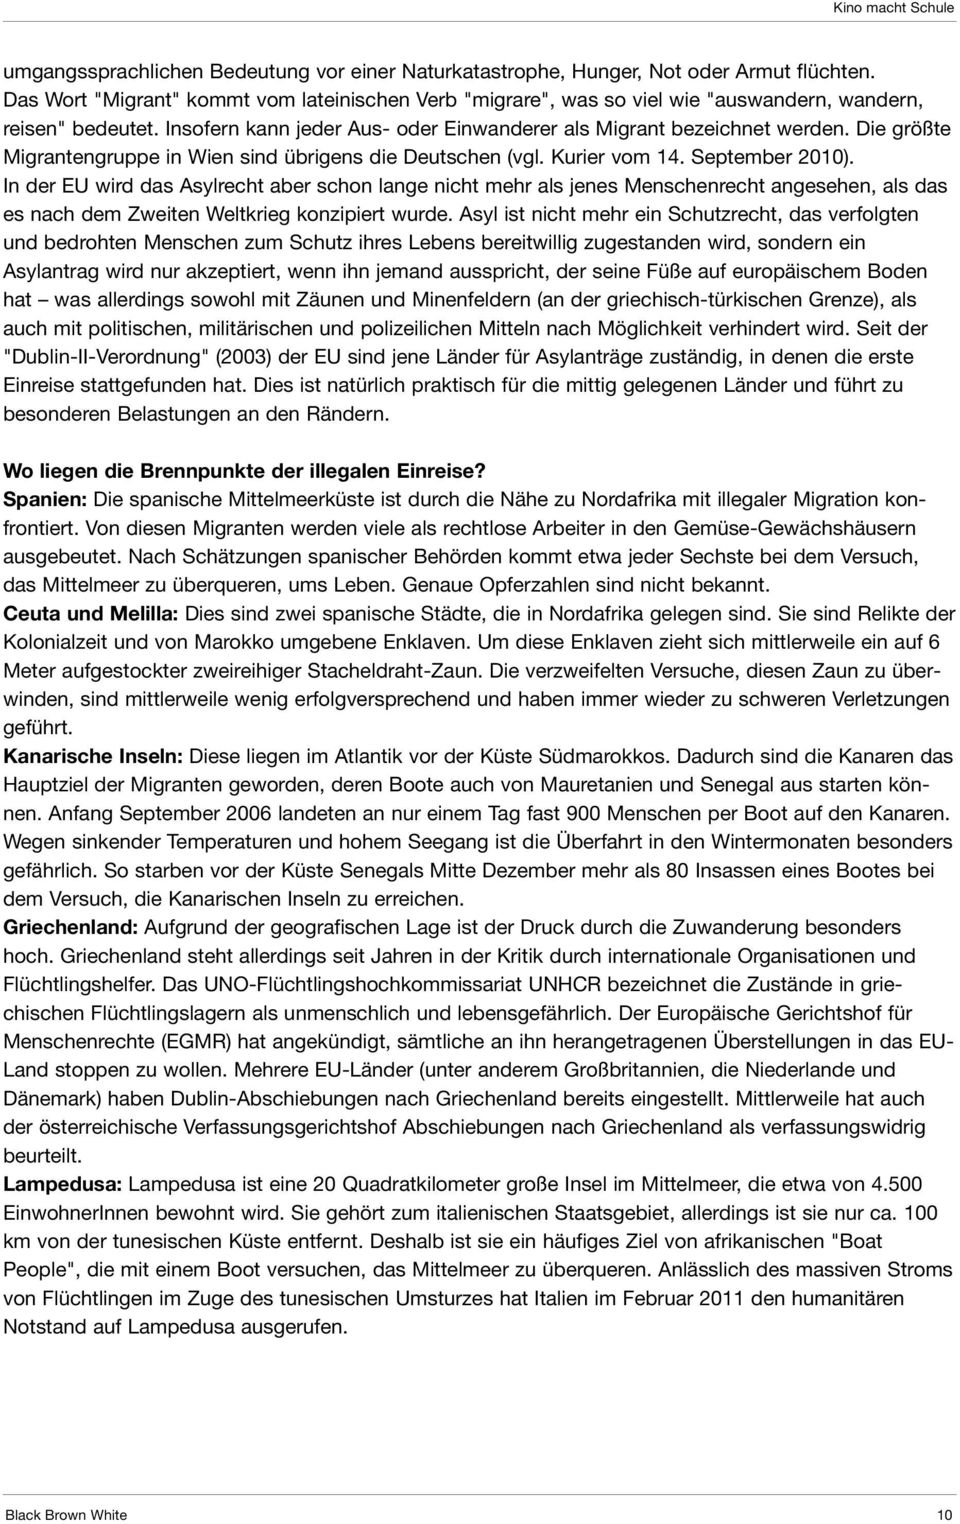 Die größte Migrantengruppe in Wien sind übrigens die Deutschen (vgl. Kurier vom 14. September 2010).